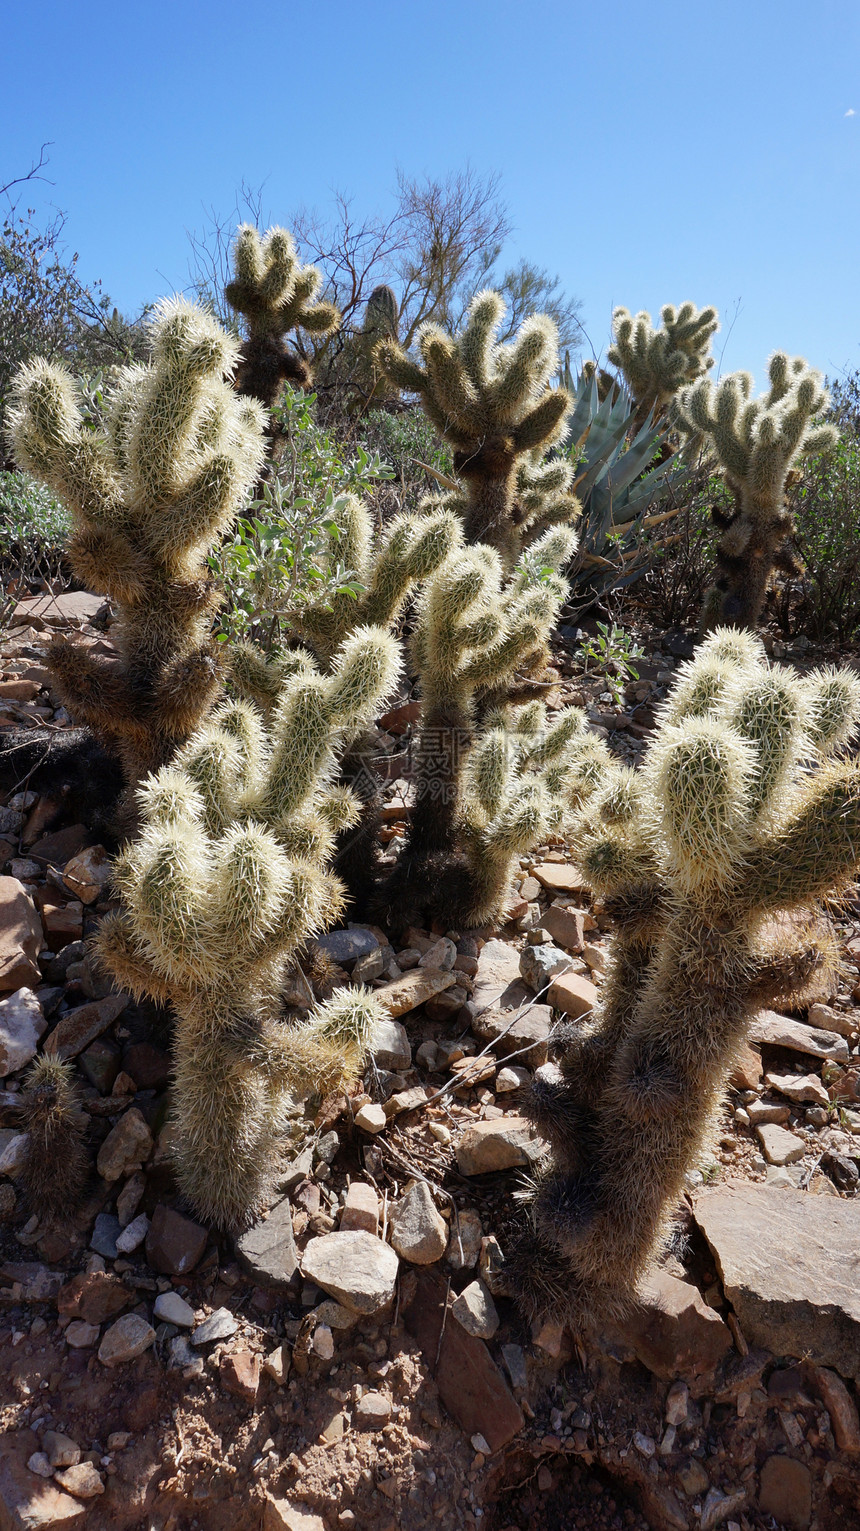 亚利桑那索诺拉沙漠博物馆内的景象干旱气候植物群蓝色植物学野生动物花园植被公园植物图片